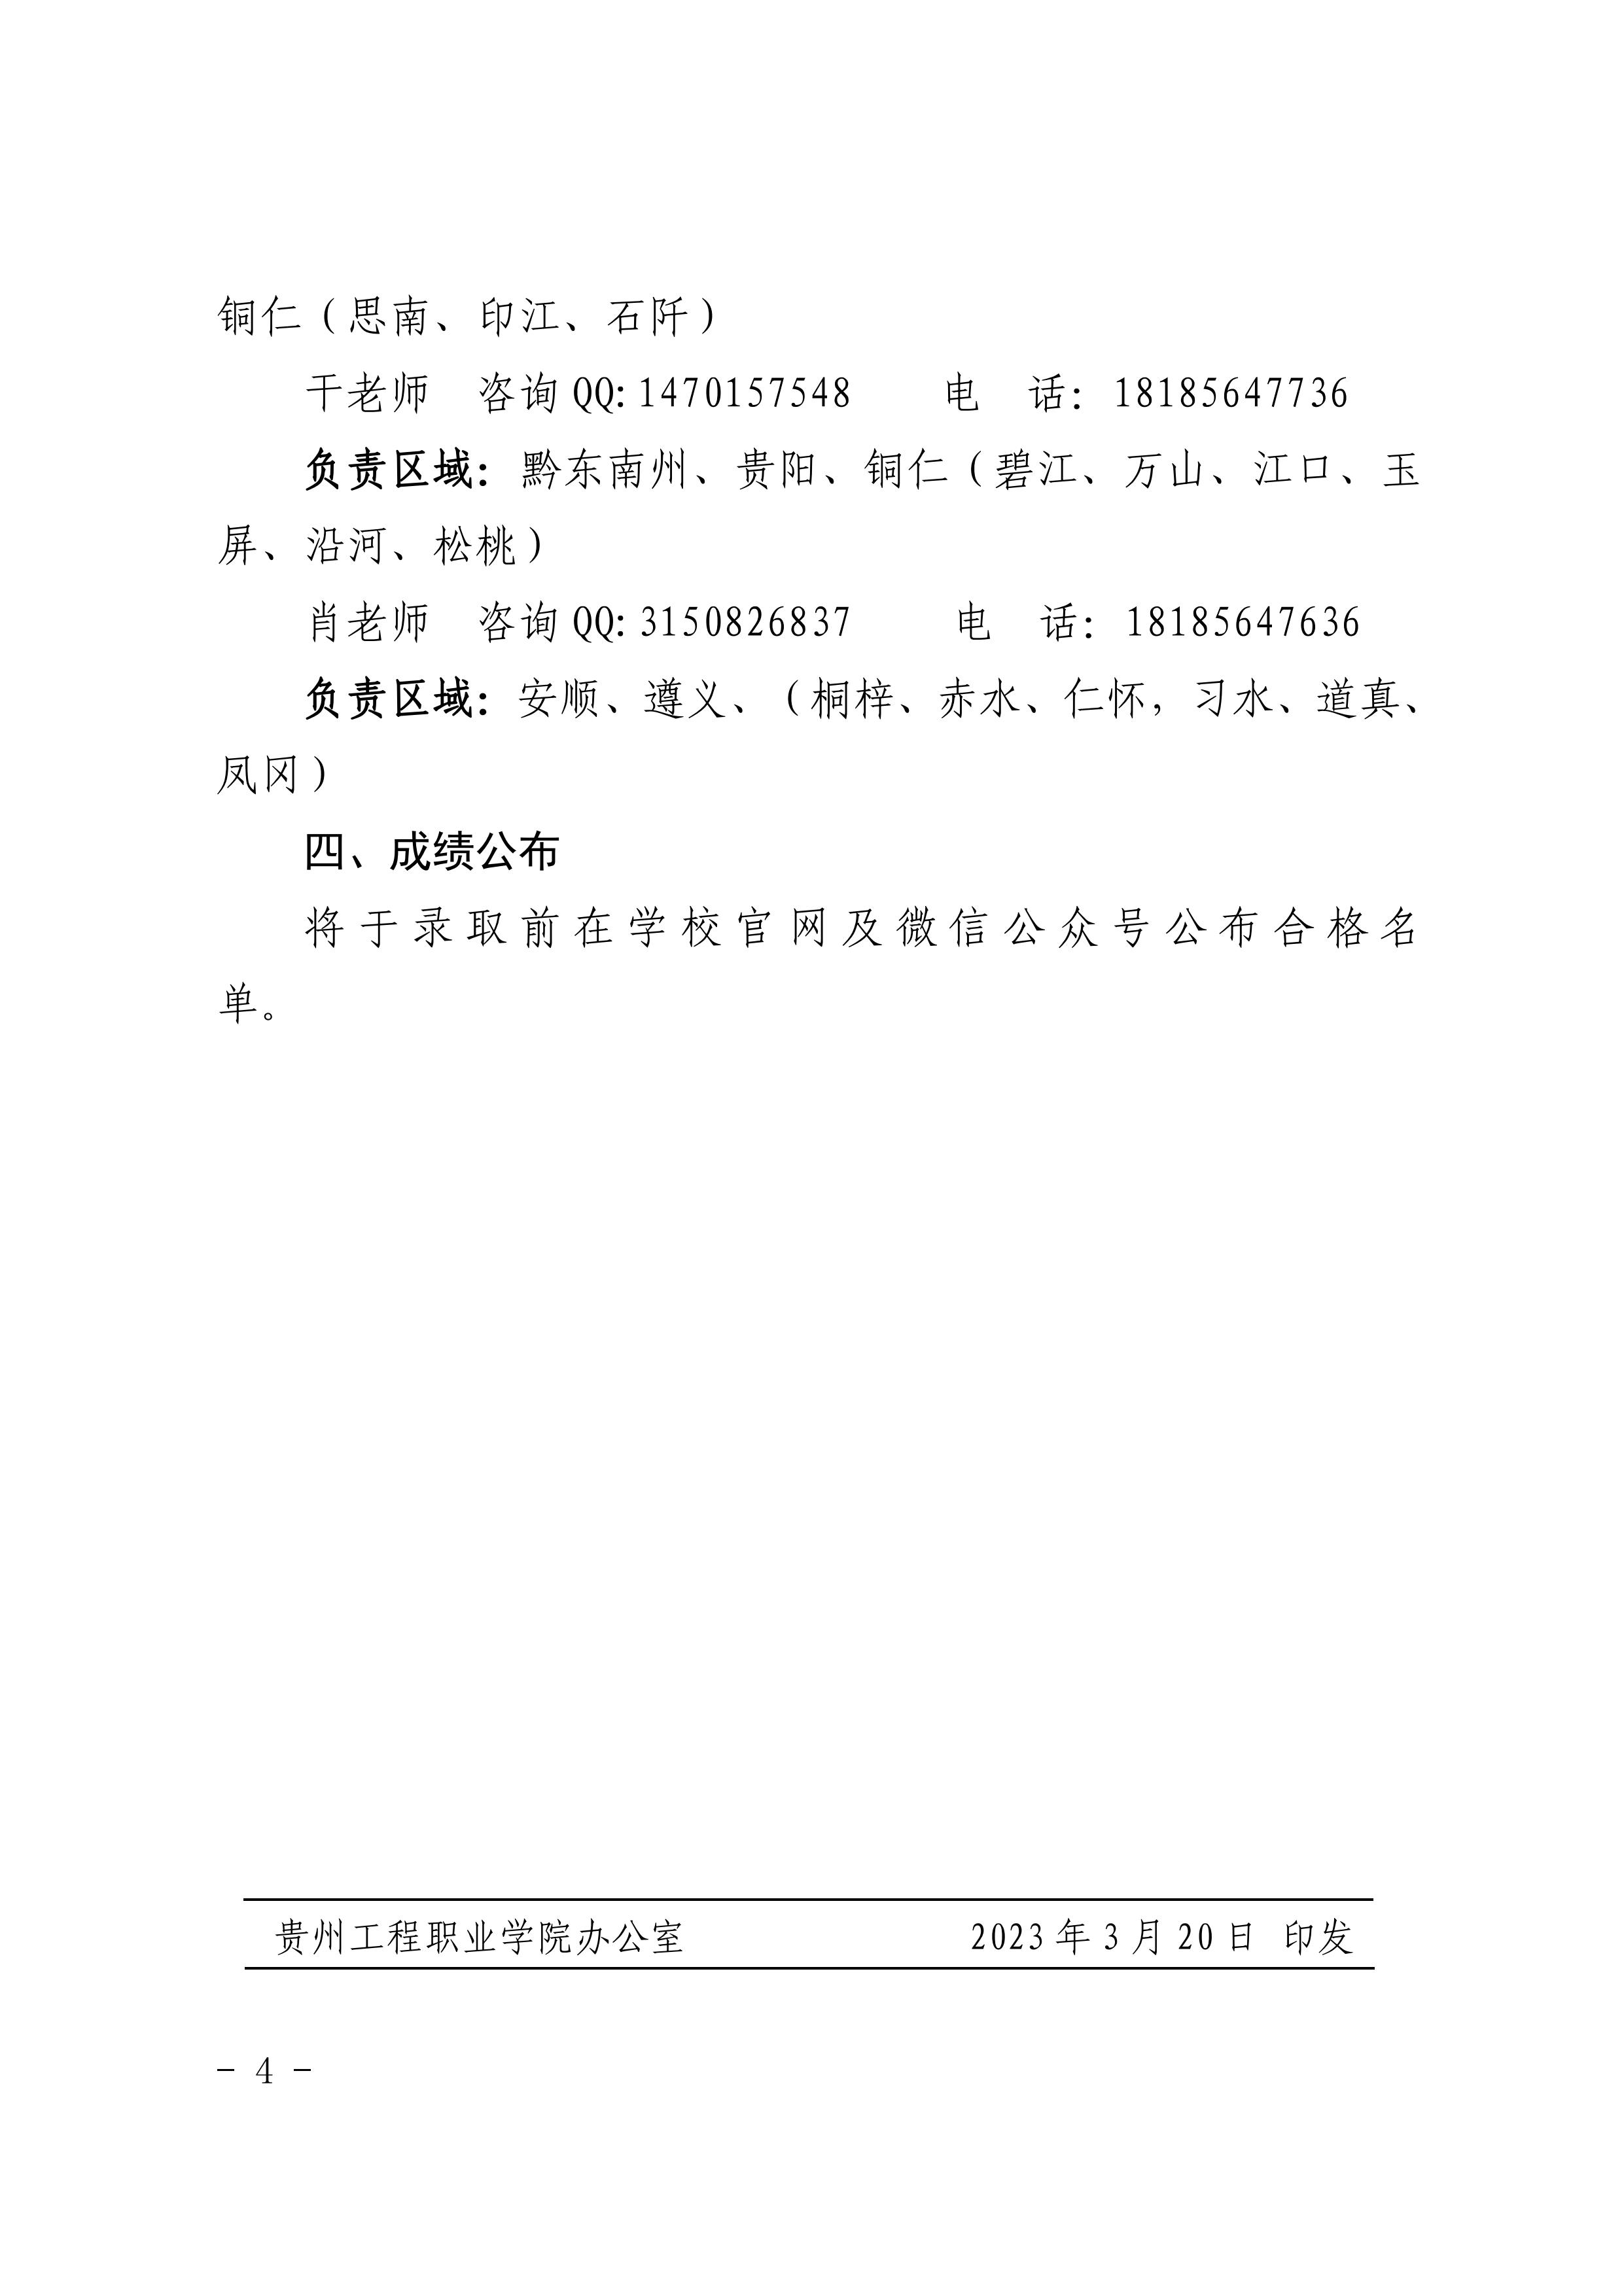 贵州工程职业学院 2023年分类考试招生职业适应性测试方案(图4)